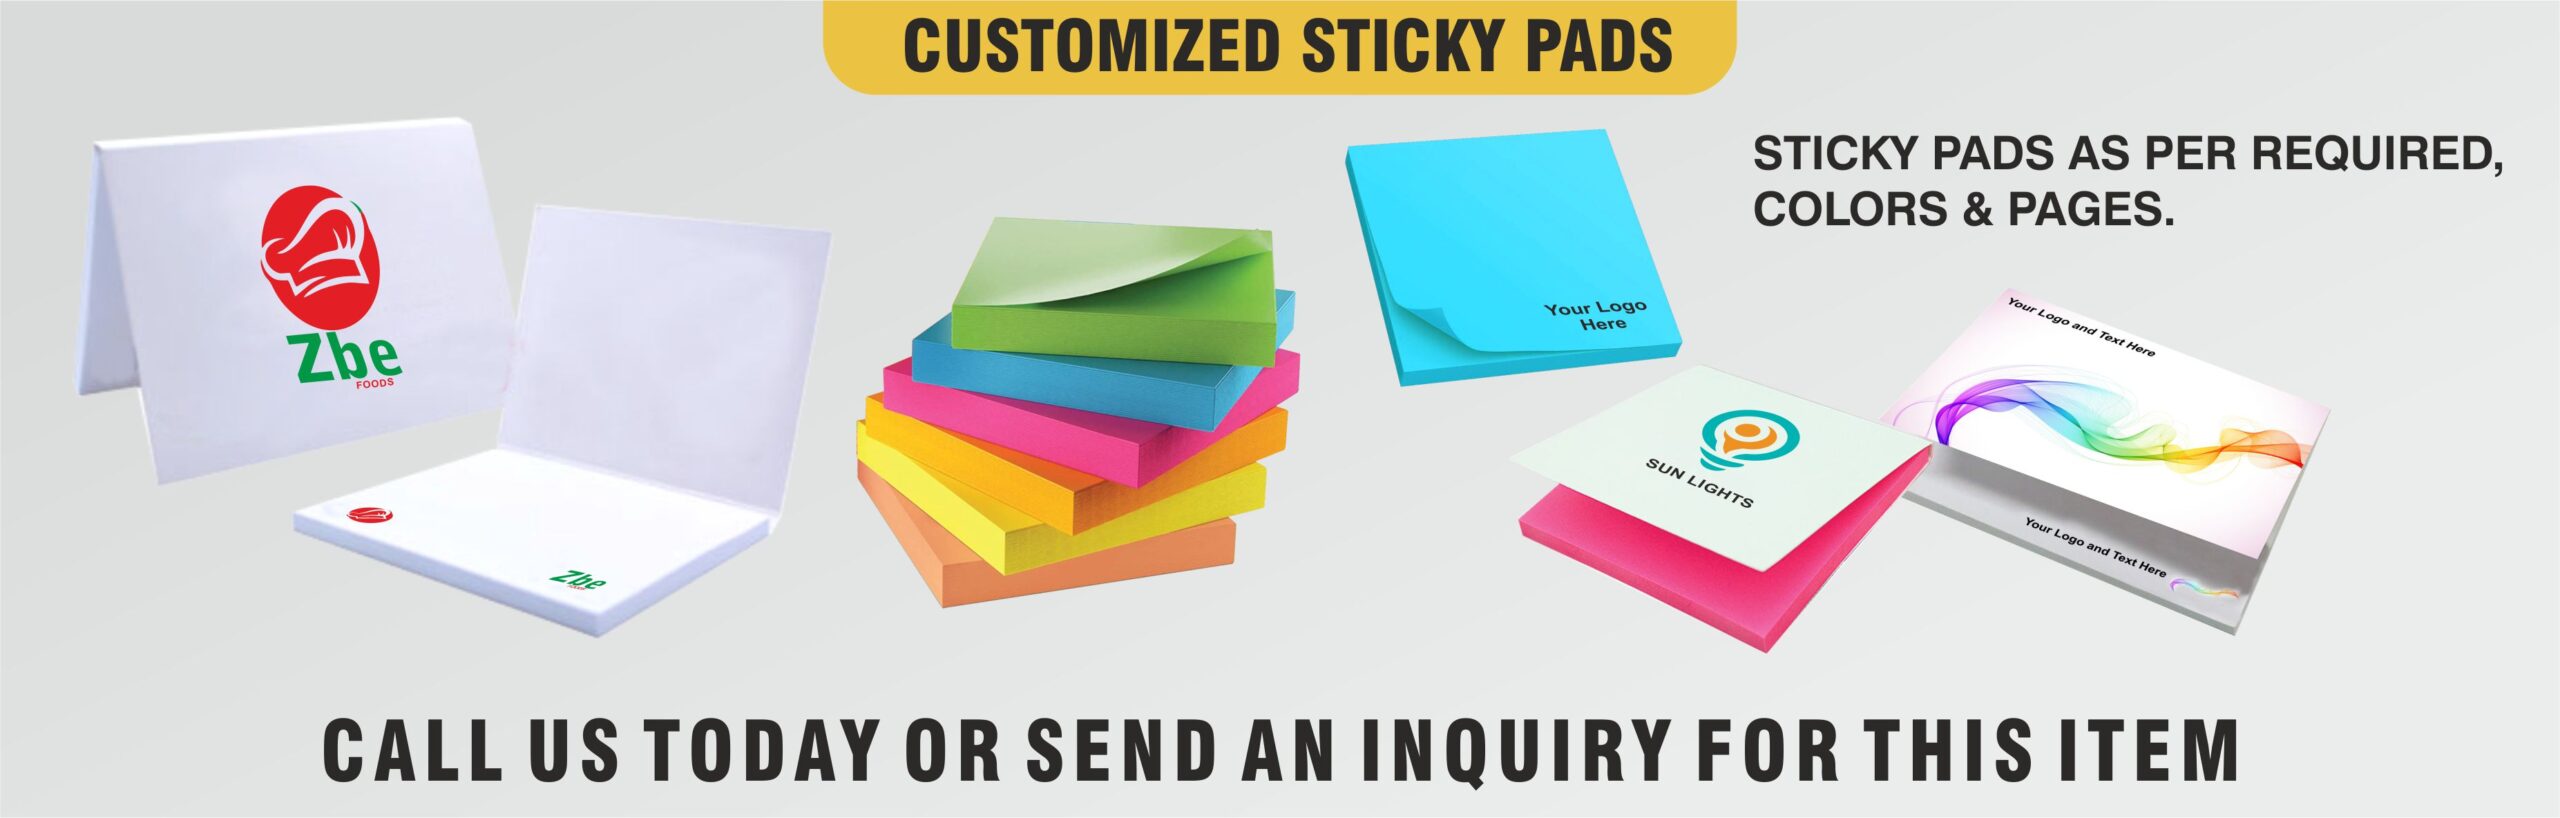 Customized Sticky Pads